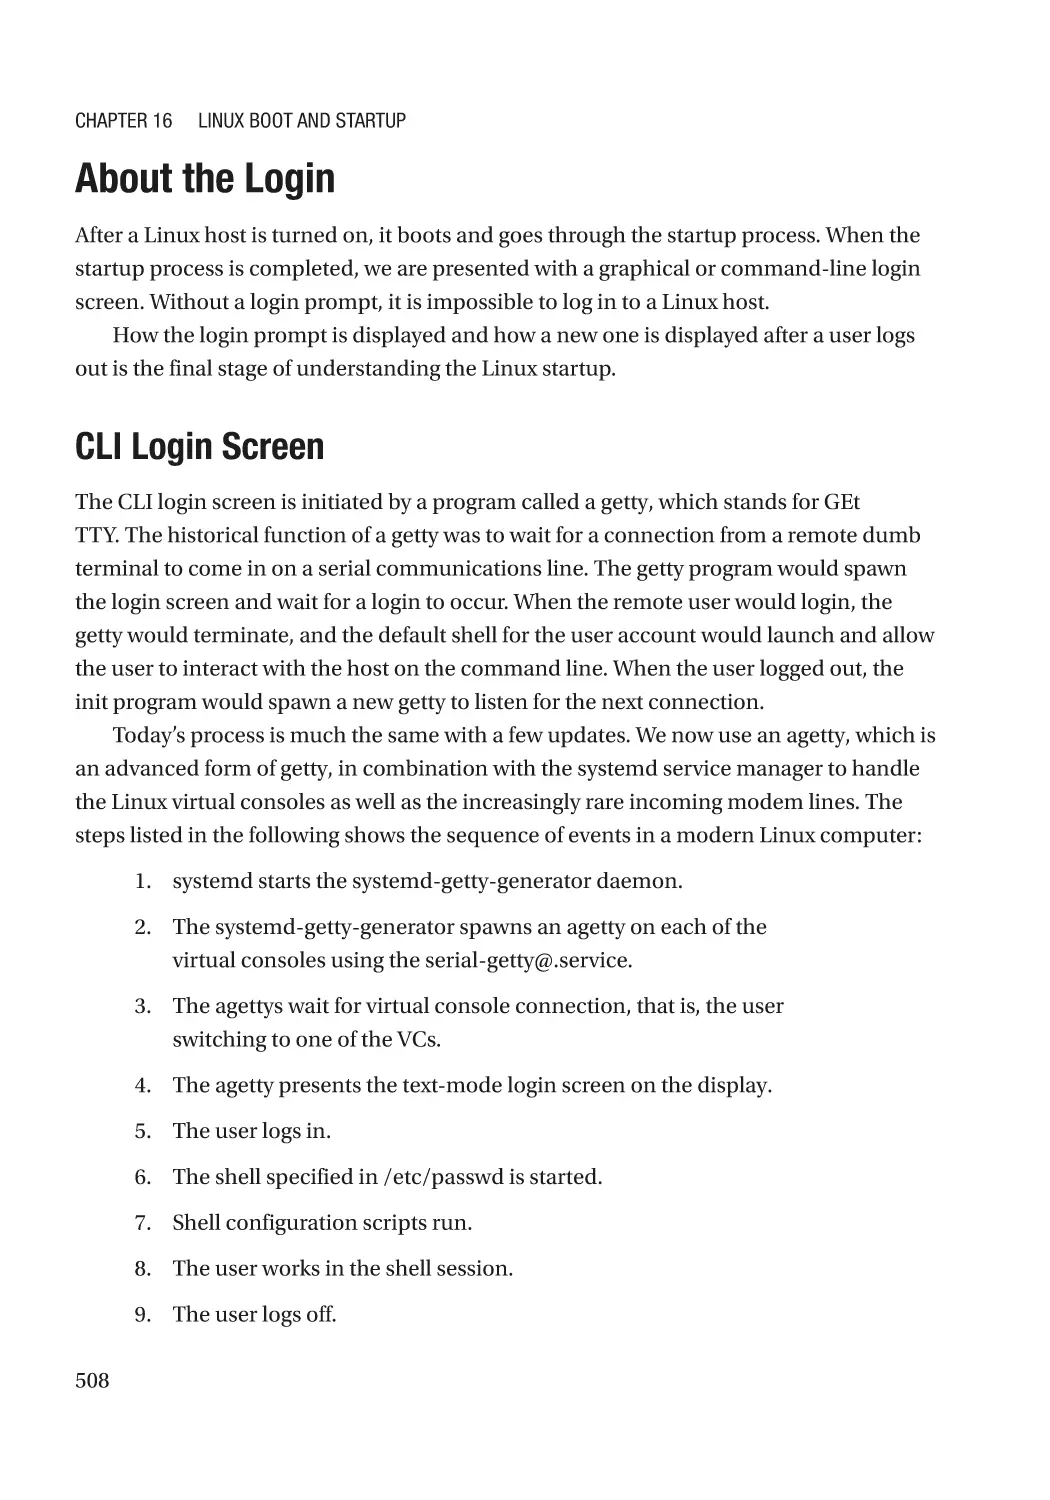 About the Login
CLI Login Screen